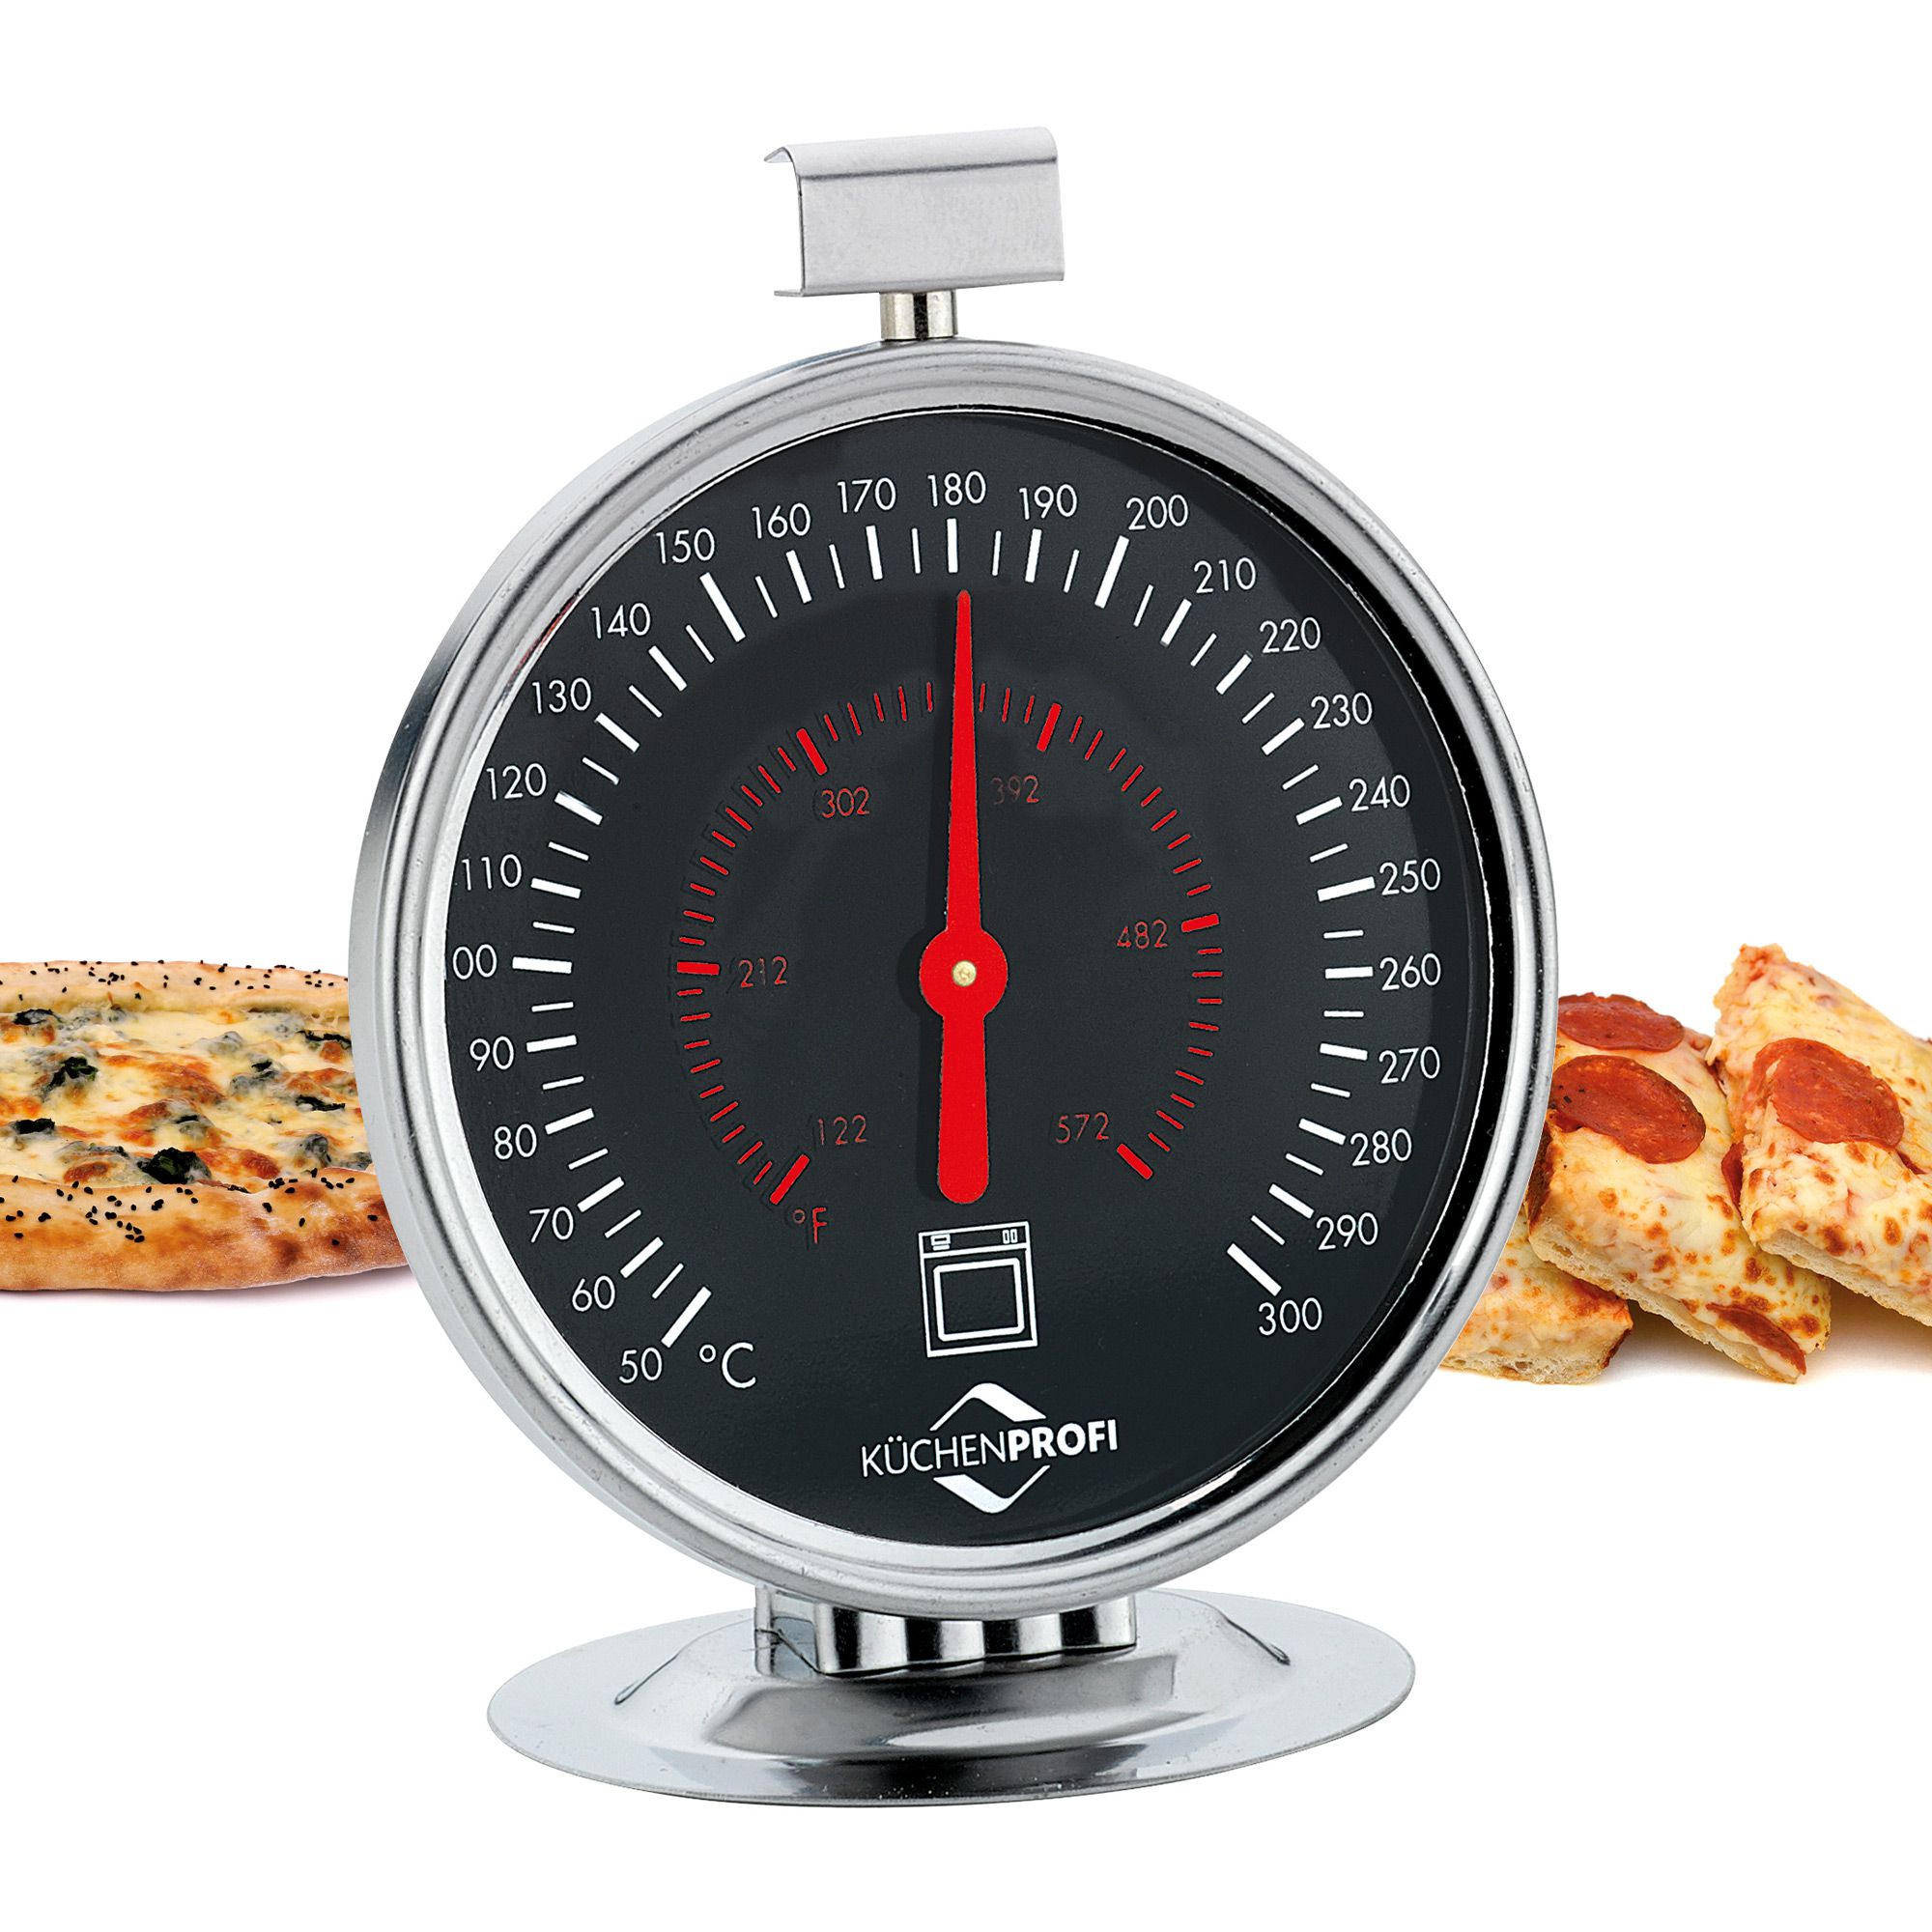 Küchenprofi - oven thermometer